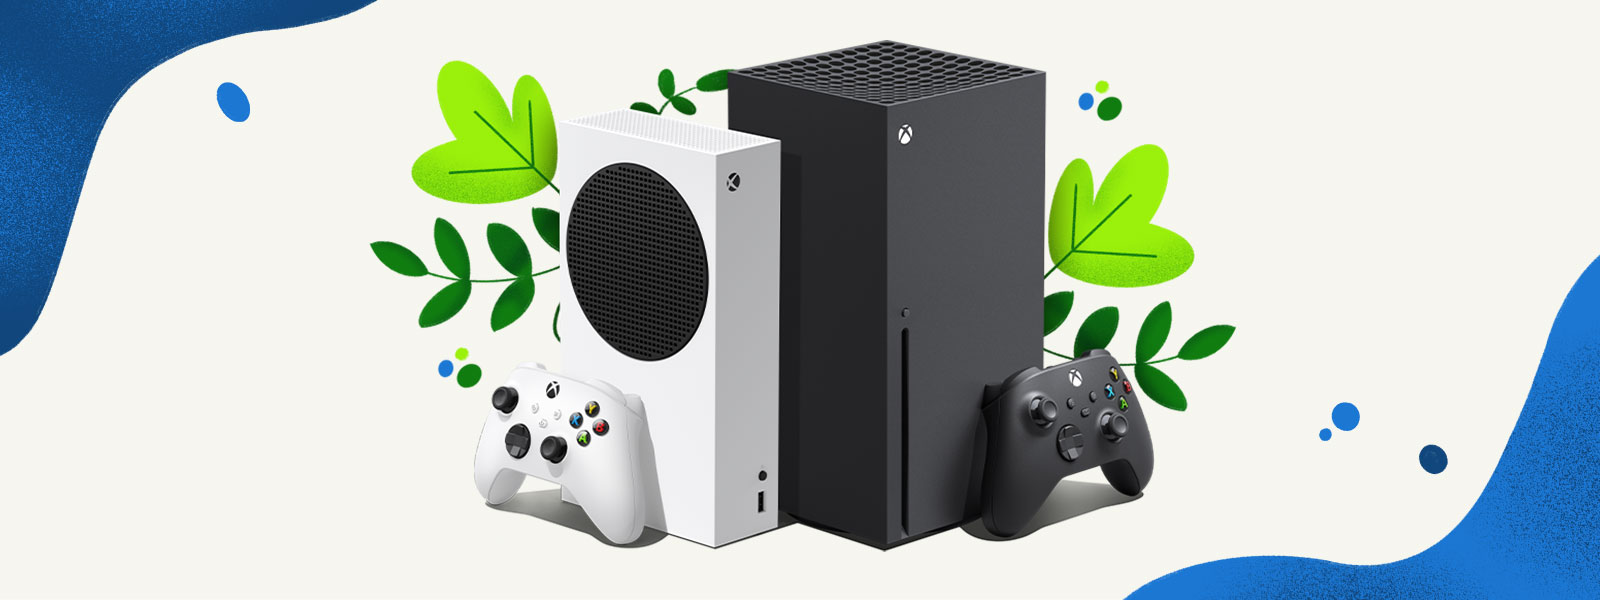 Xbox Series X ve Xbox Series S konsolları, bitkilerin ve sıçrayan mavi su damlalarının yer aldığı dekoratif bir arka planın önünde yan yana duruyor.